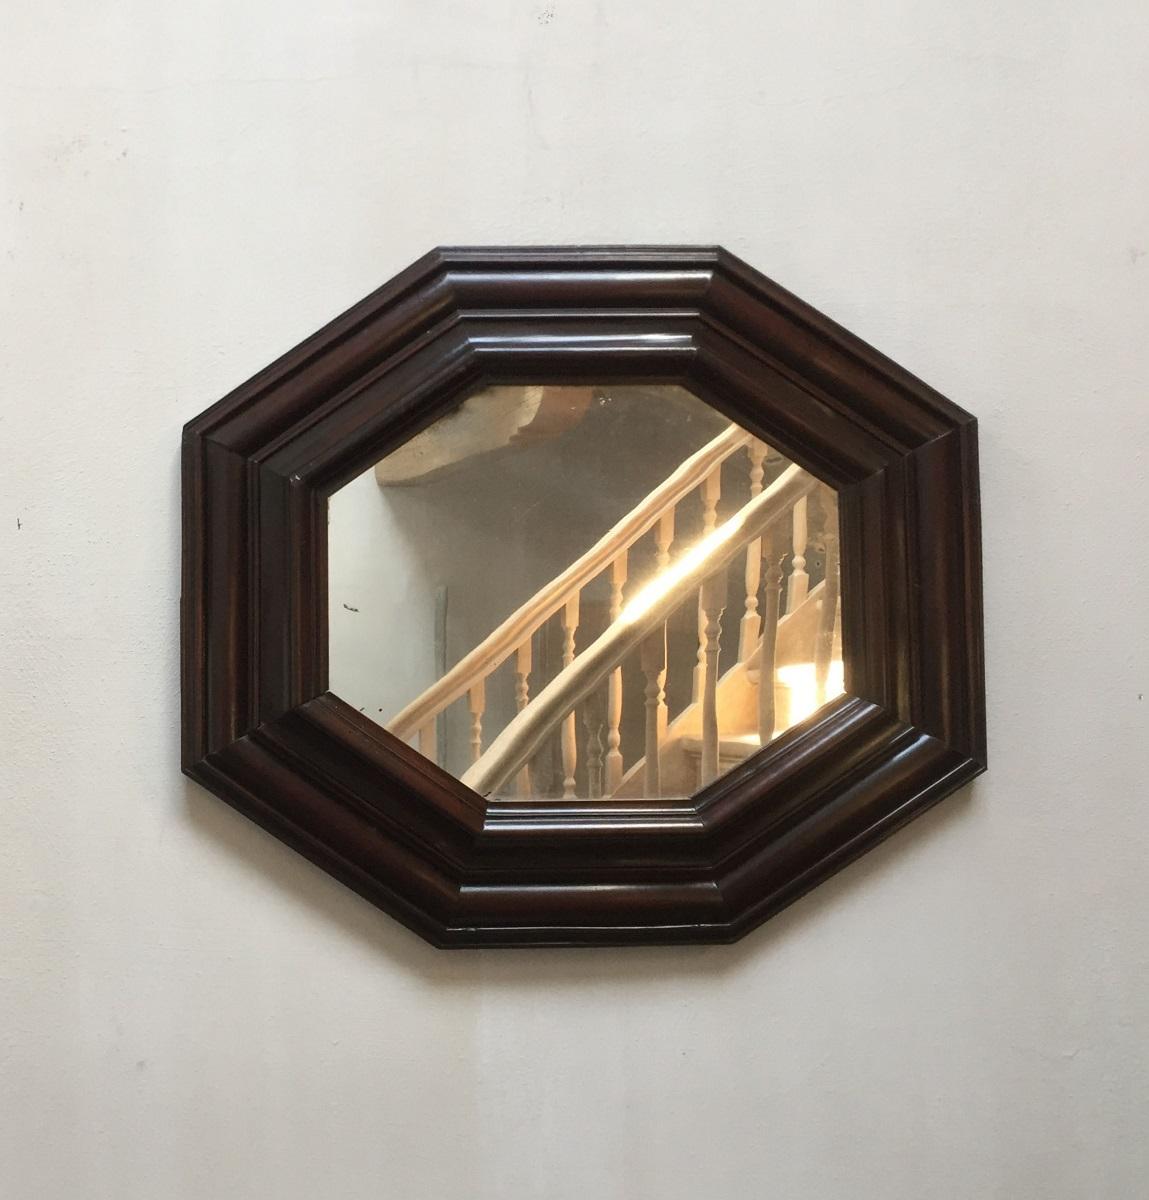 Italienischer achteckiger Spiegel aus Nussbaumholz aus dem späten 18. Jahrhundert. Abgesehen von kleineren Restaurierungsarbeiten ist dieser Spiegel in tadellosem Zustand und kann in zwei Richtungen aufgehängt werden.